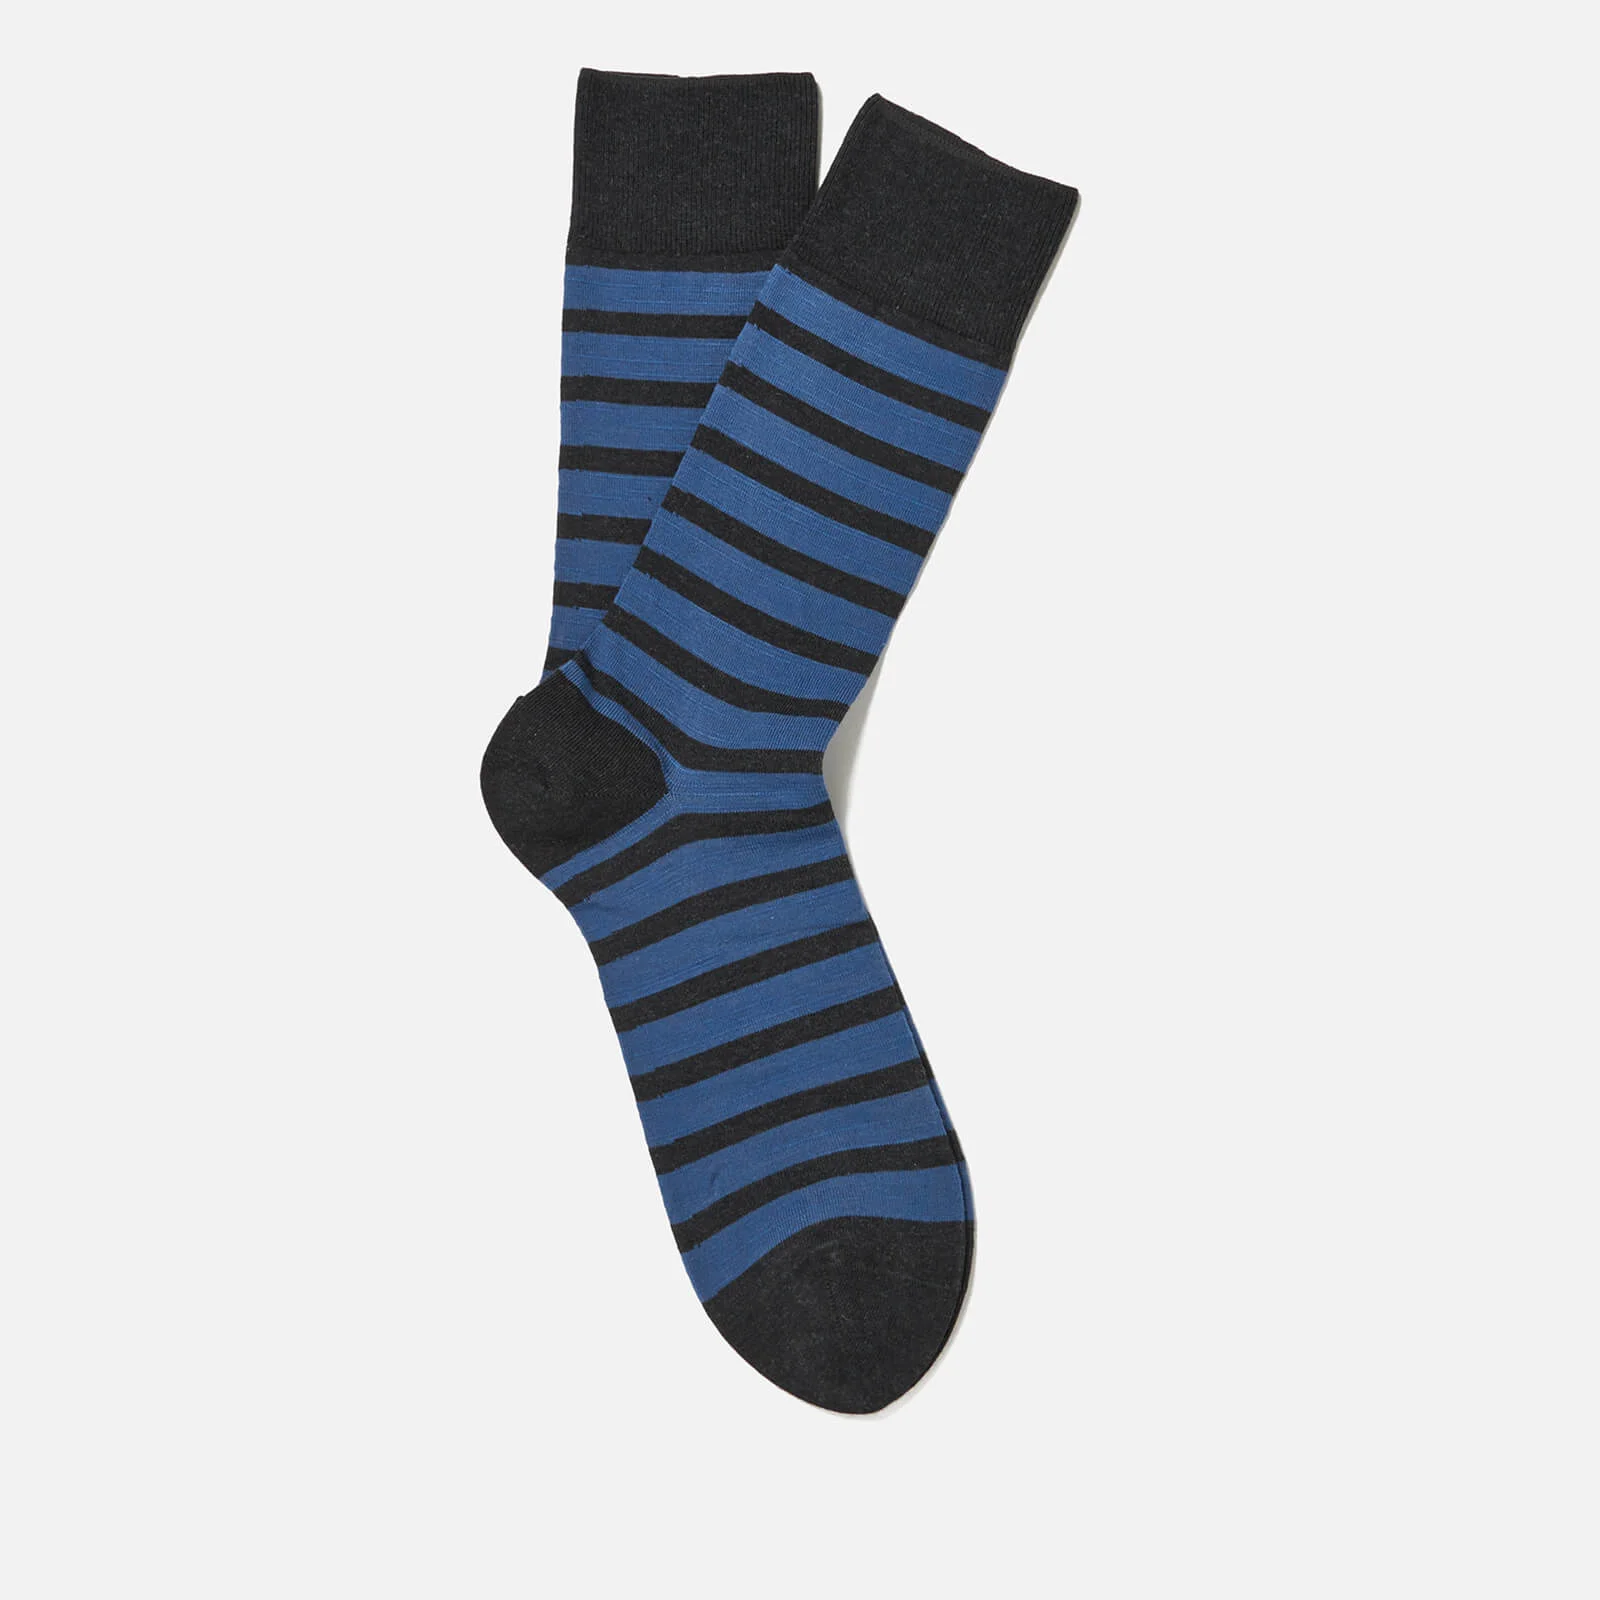 FALKE Men's Even Stripe Basic Socks - Anthracite Melange Image 1